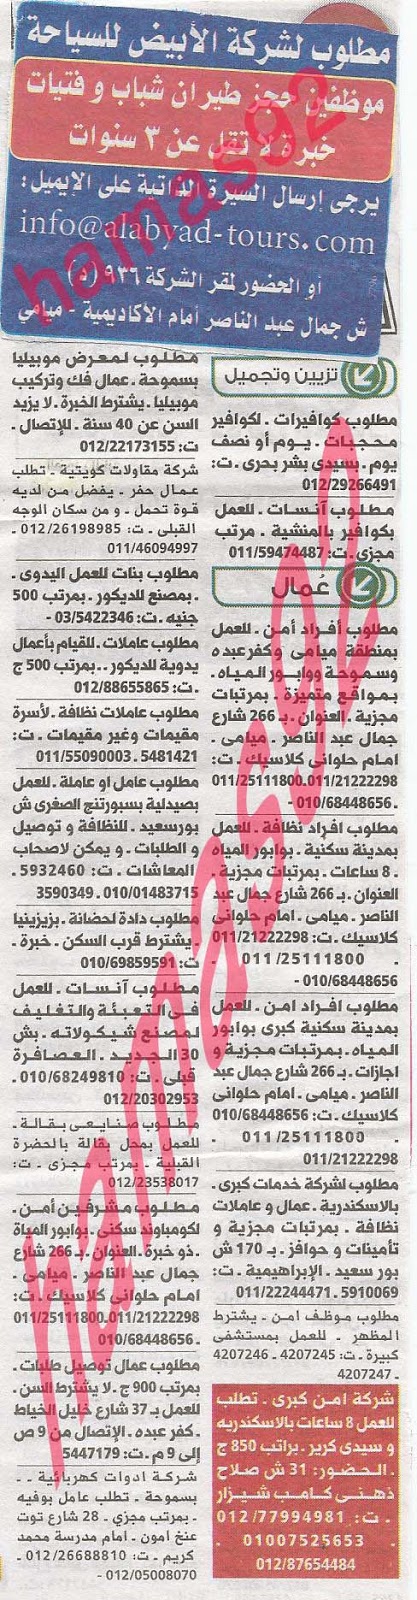 وظائف خالية فى جريدة الوسيط الاسكندرية السبت 24-08-2013 %D9%88+%D8%B3+%D8%B3+4